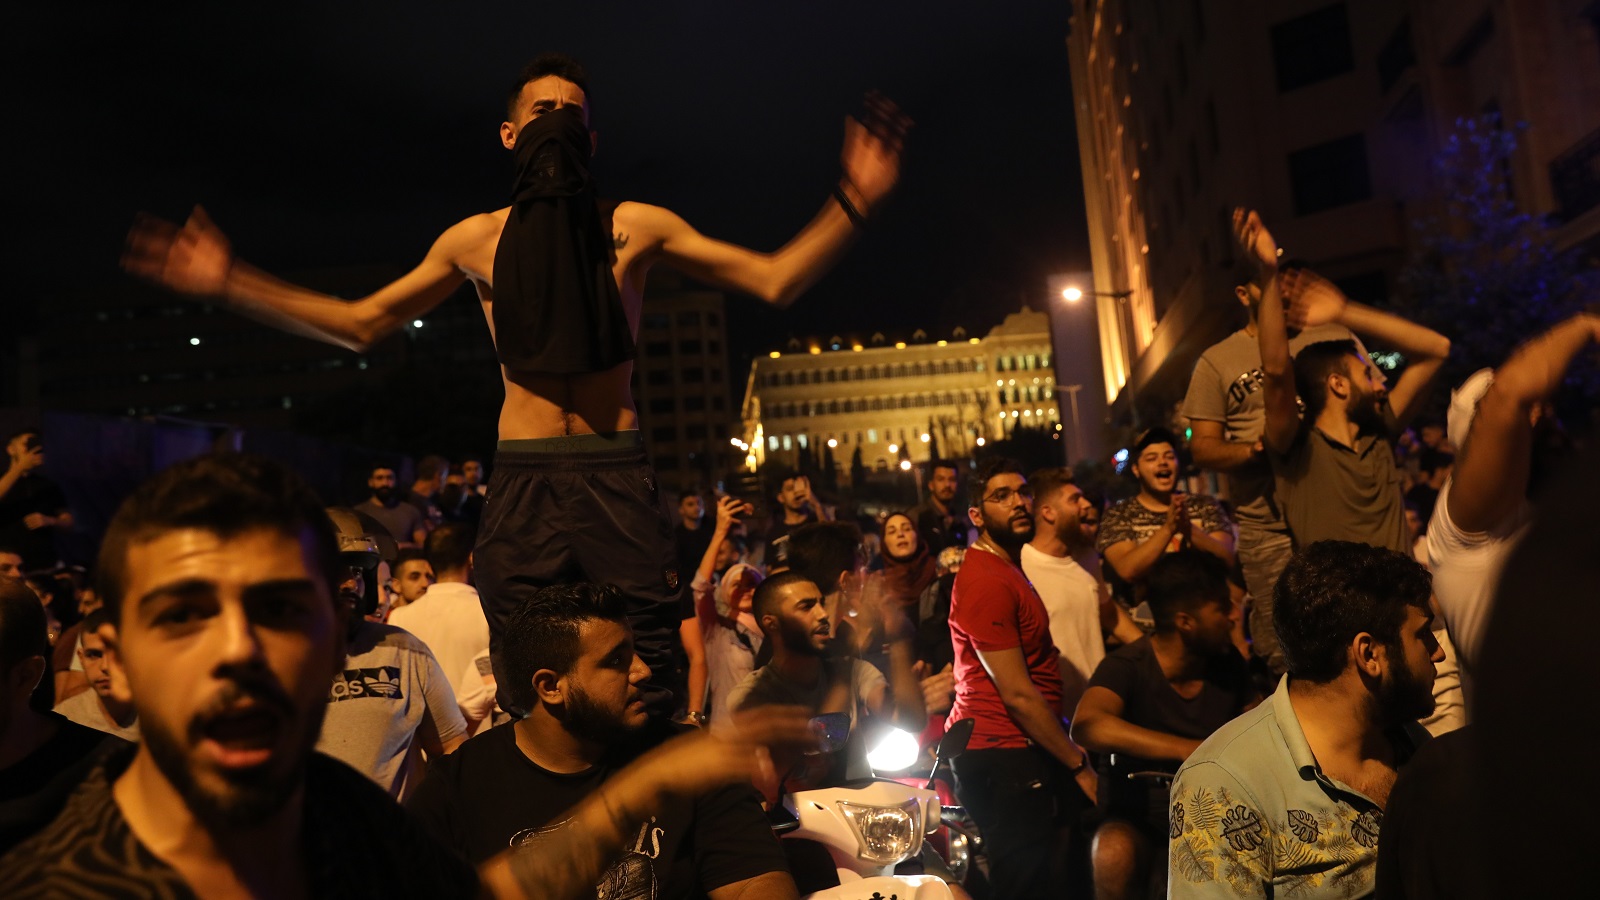 ثورة الواتسآب: وقاحة النظام ونفاد صبر اللبنانيين